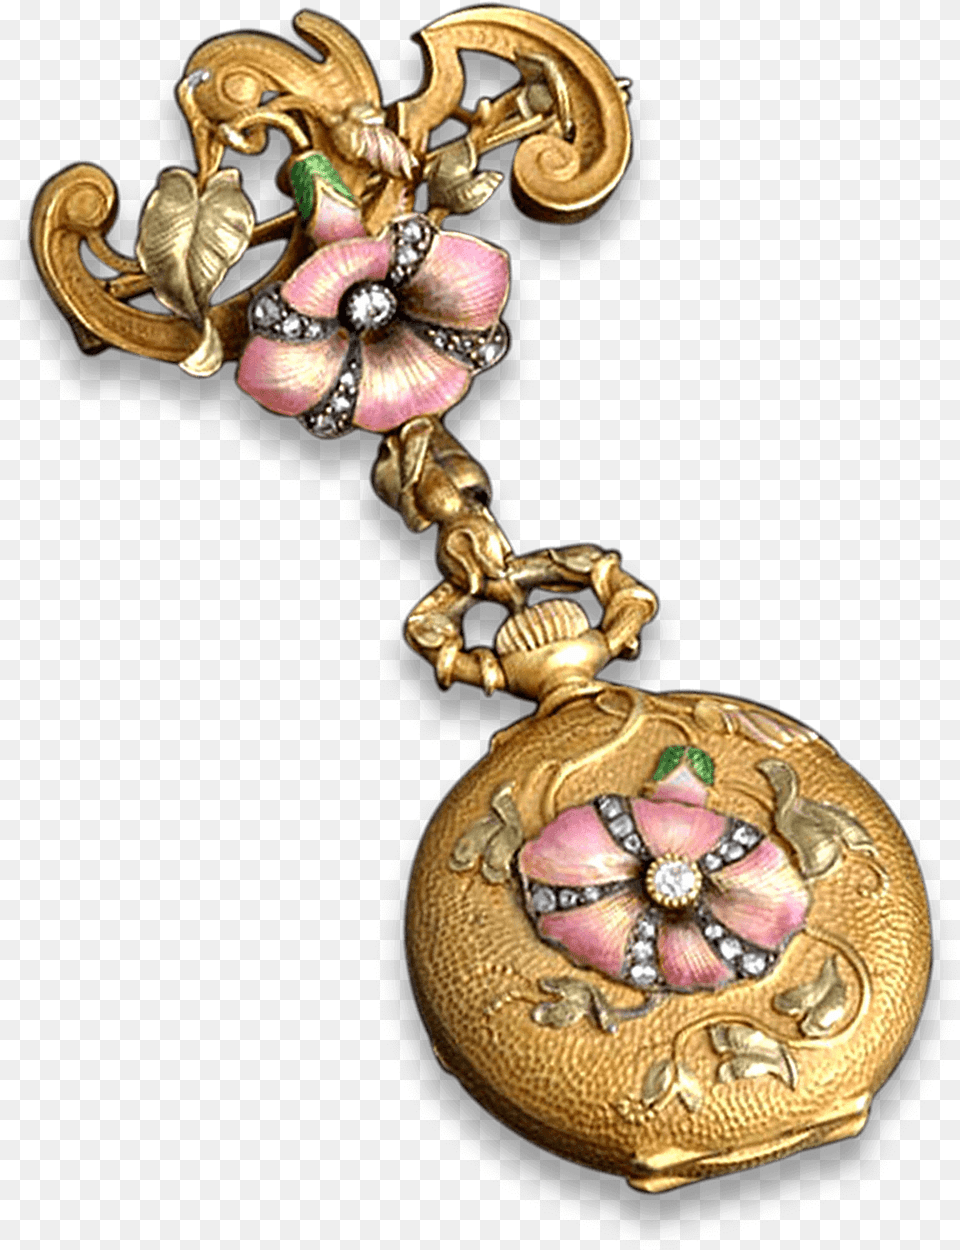 French Art Nouveau Watch Pendant Art Nouveau Jewelry, Accessories, Locket Free Transparent Png